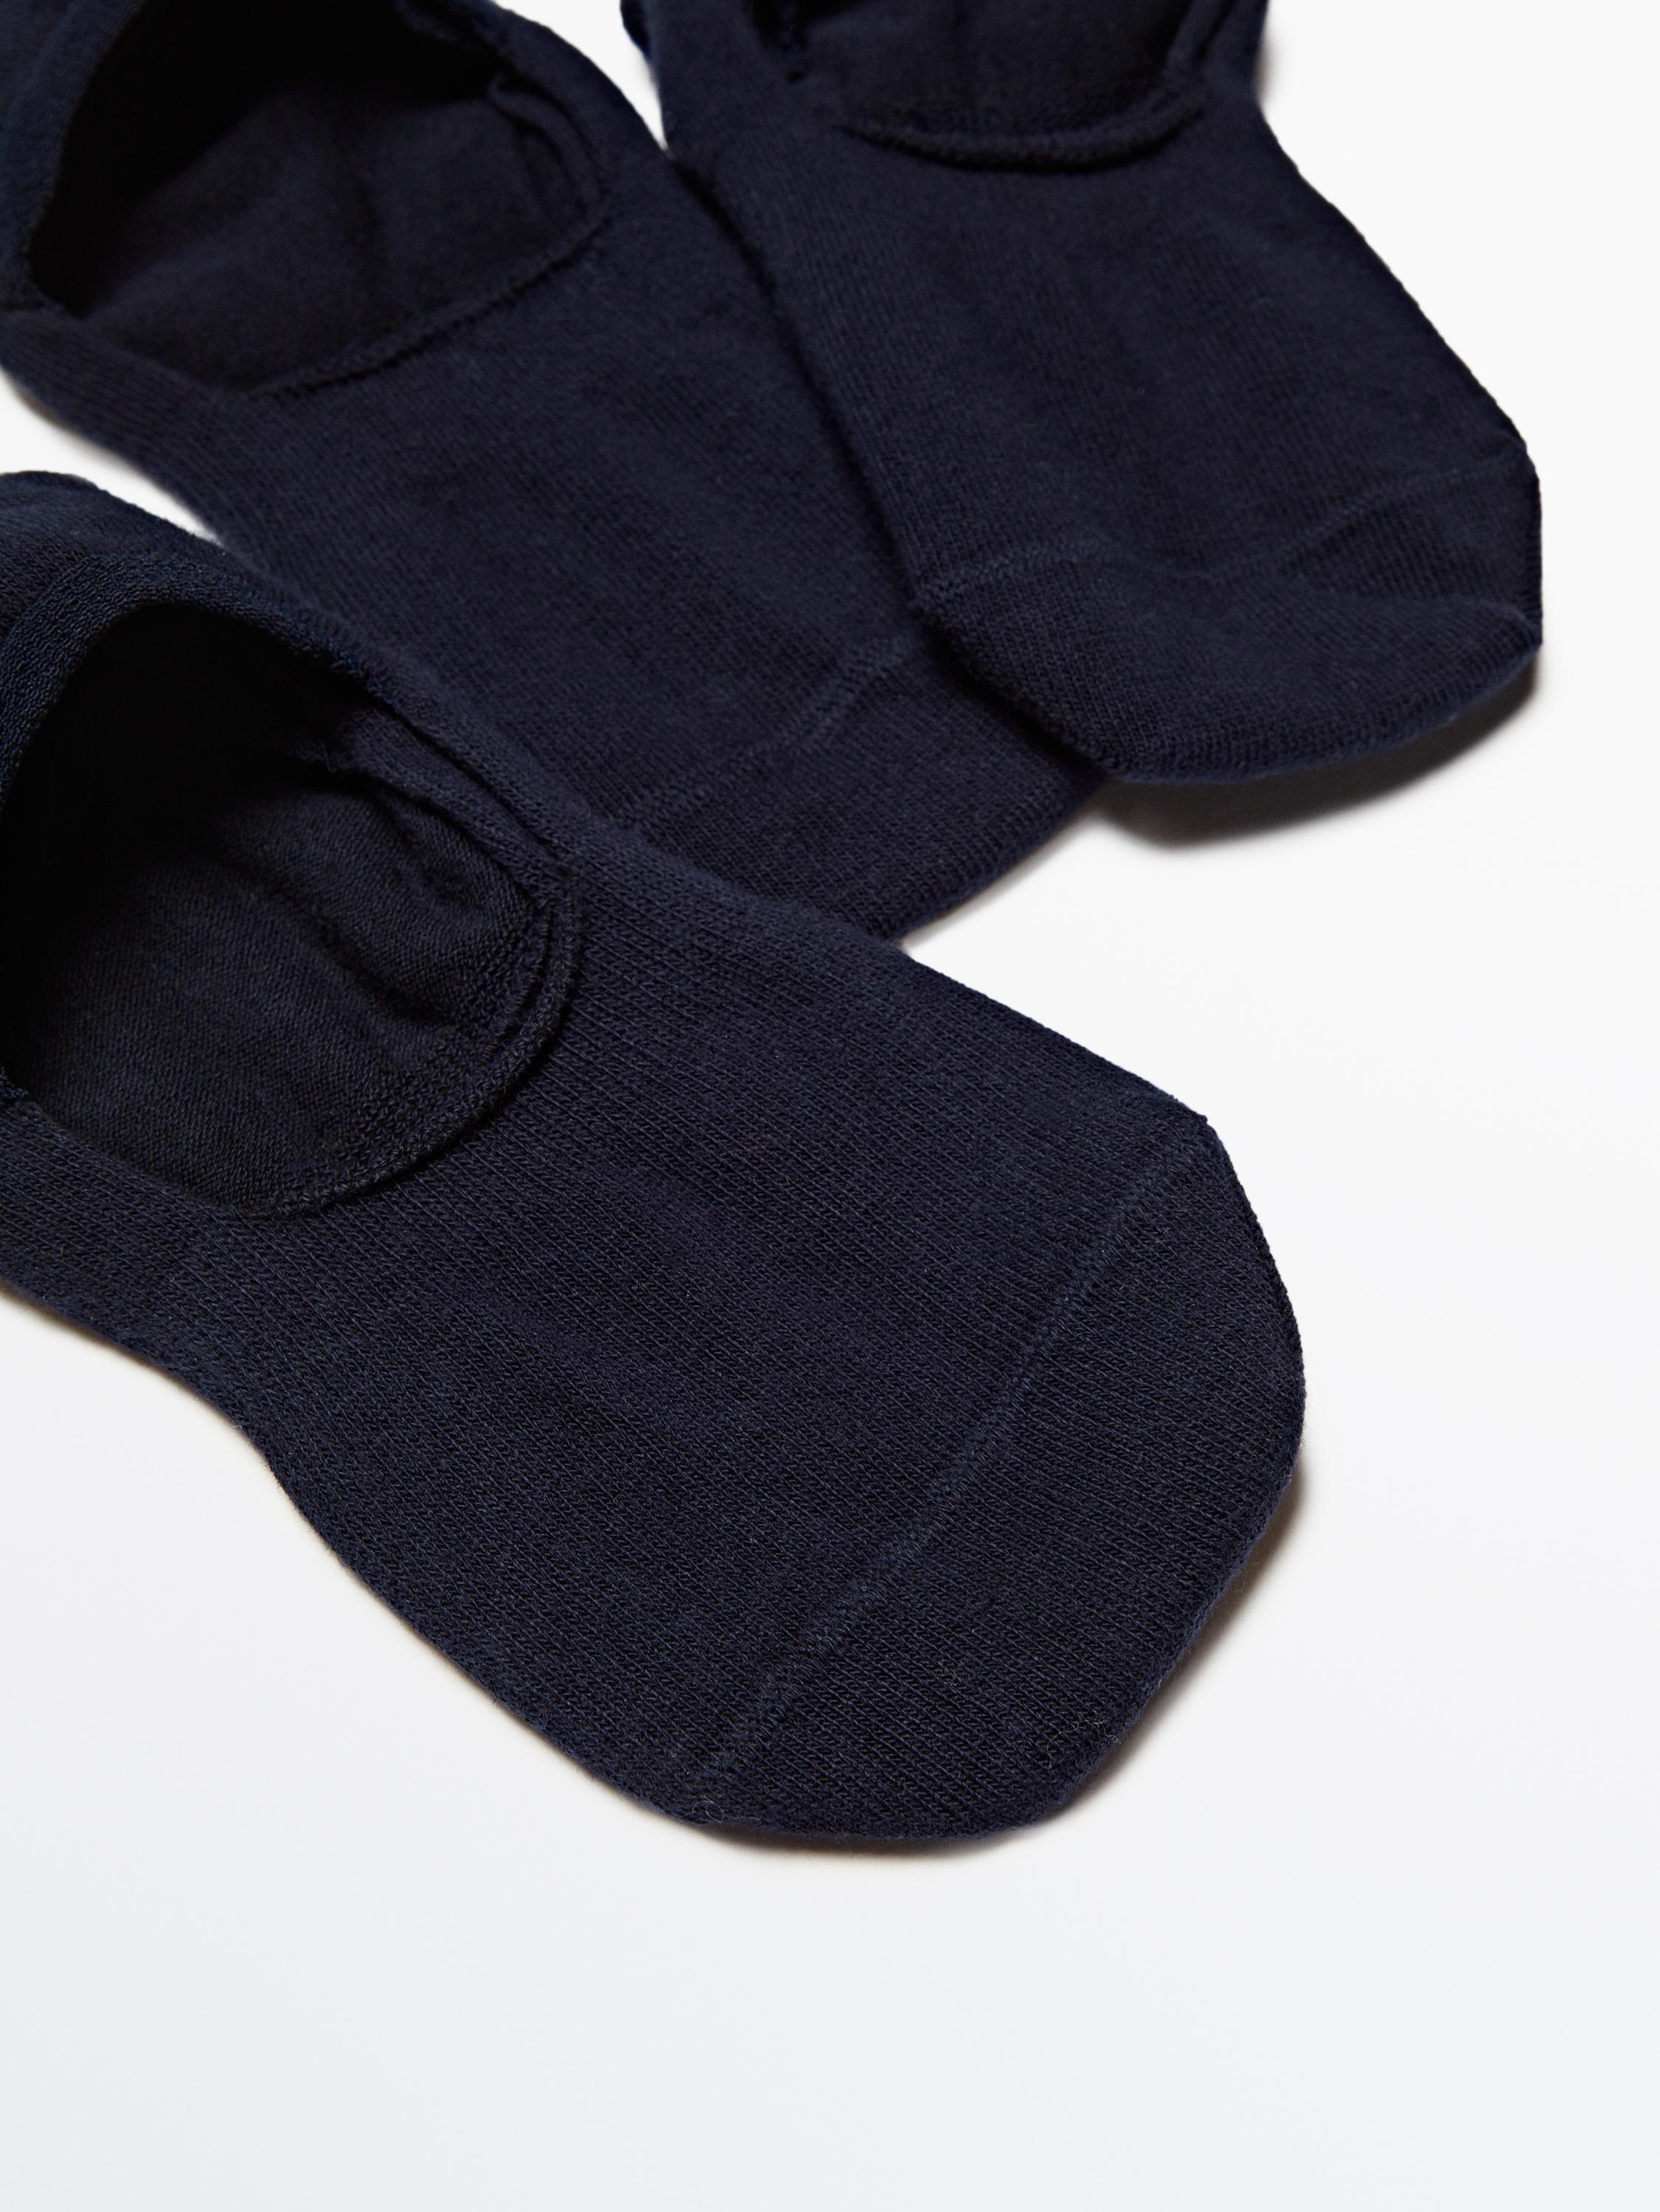 Pack 3 calcetines invisibles mezcla algodón - Negro